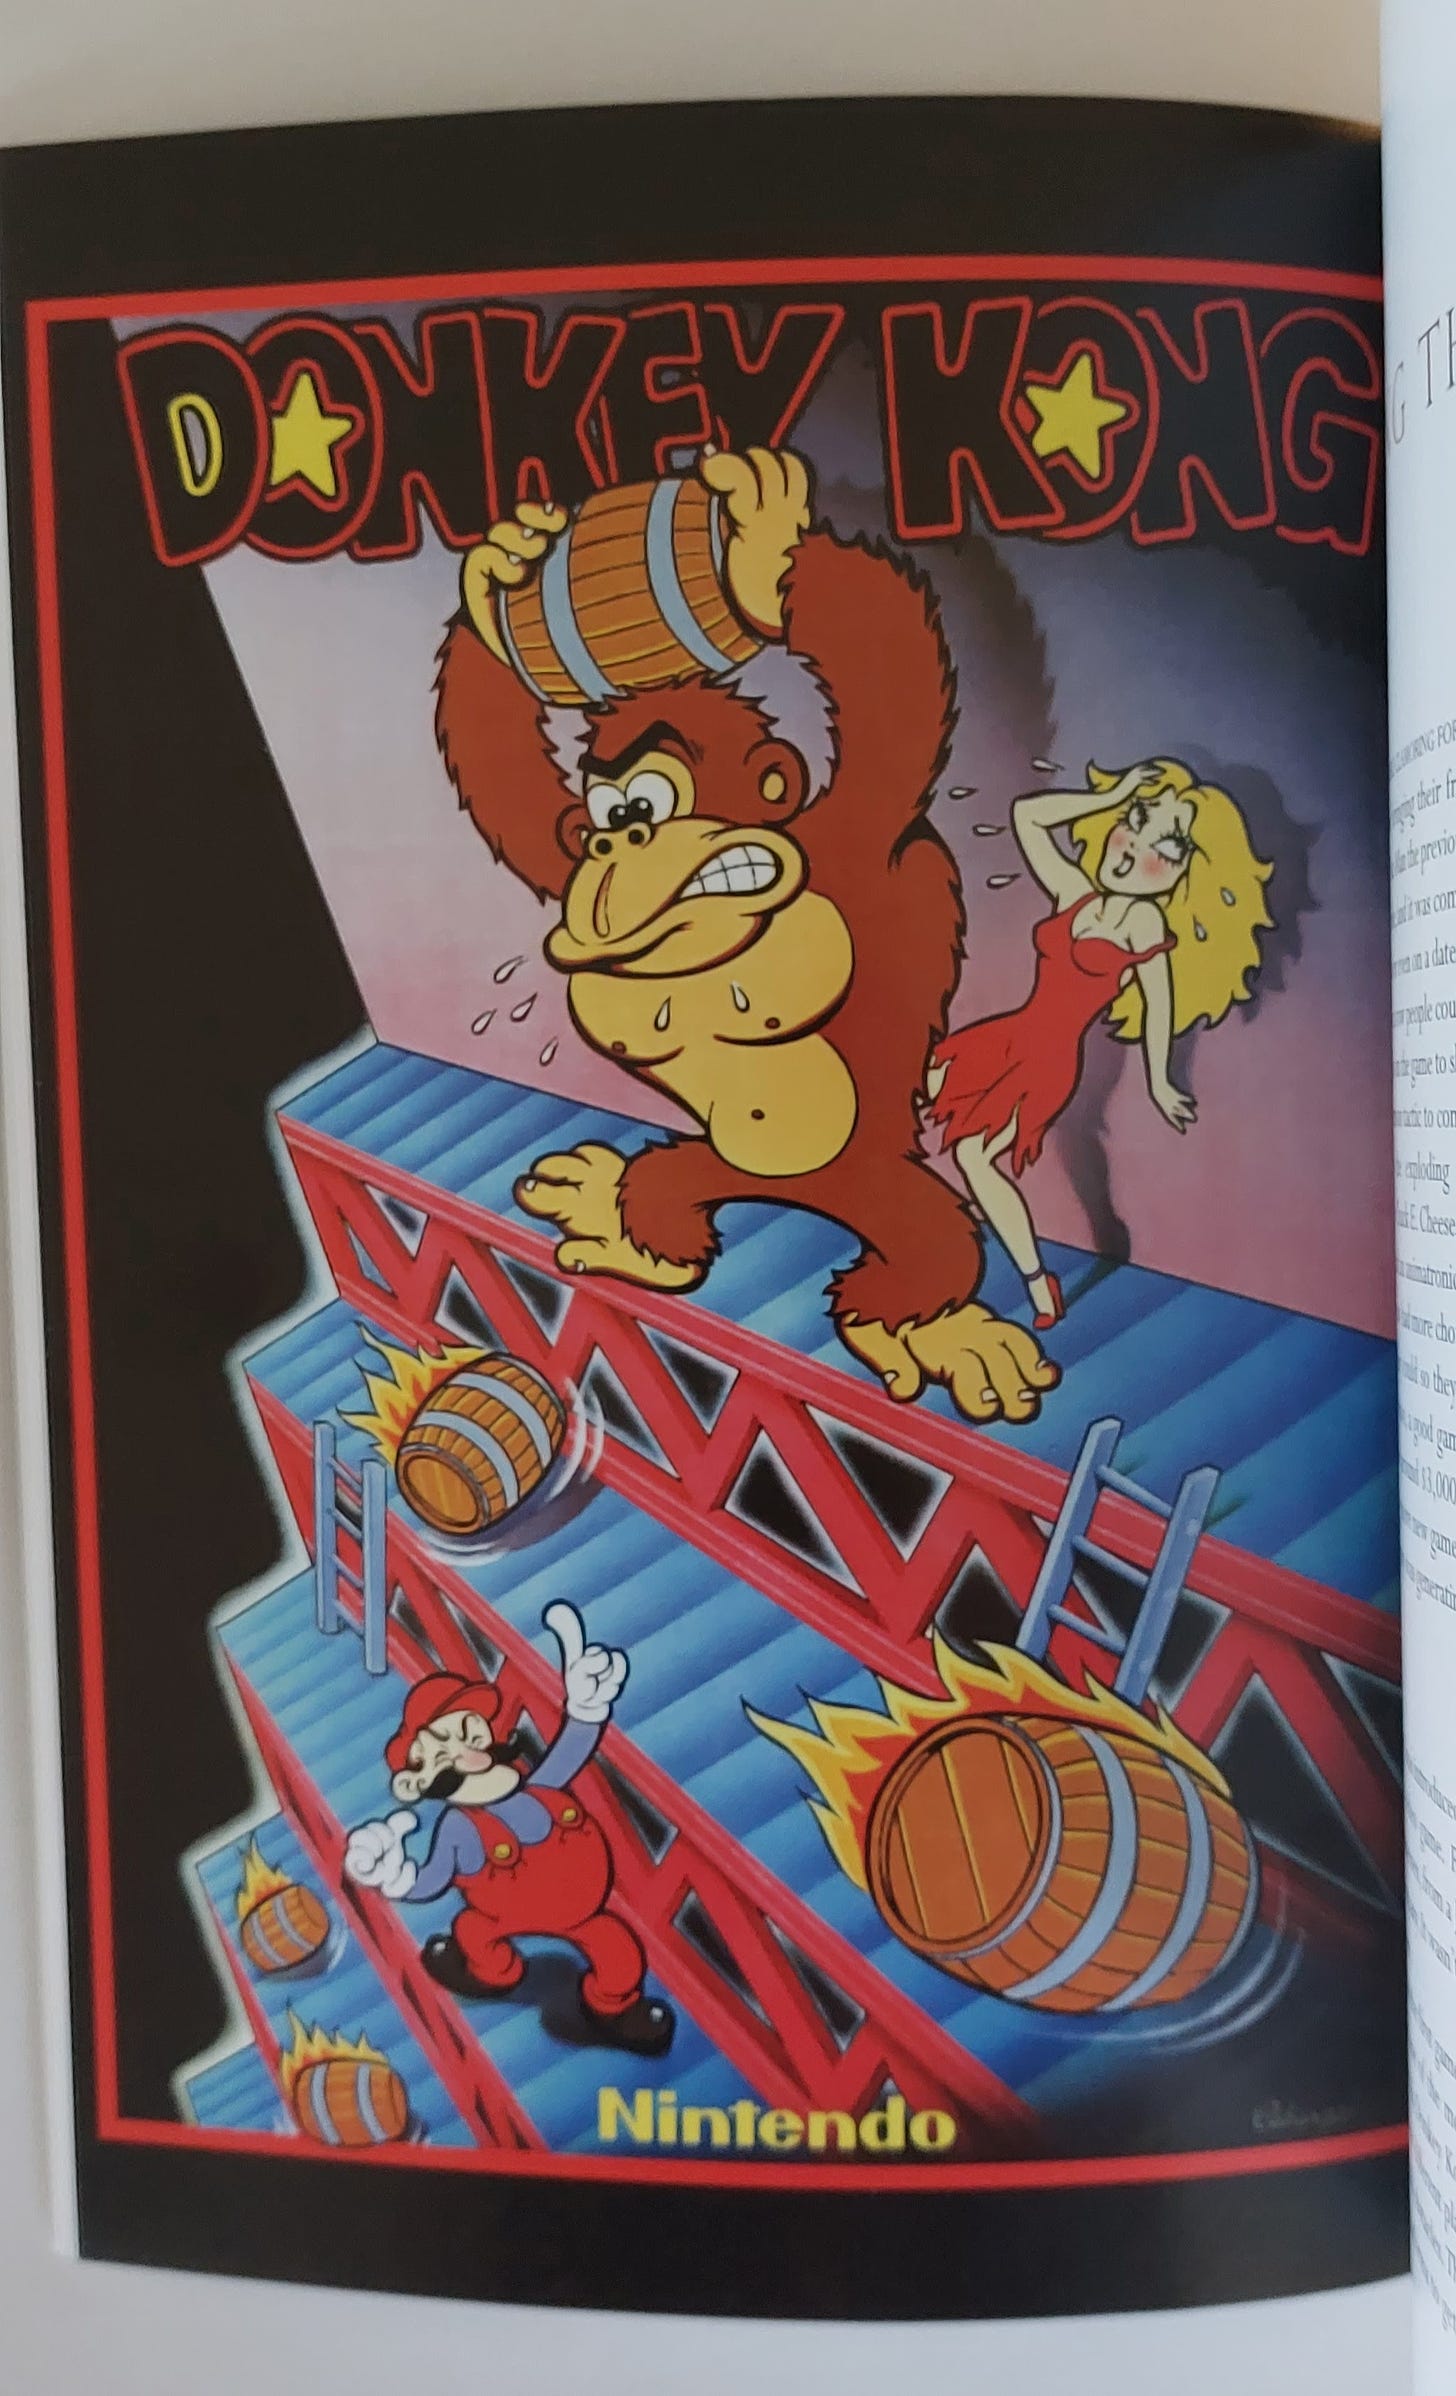 Publicidad del arcade Donkey Kong.